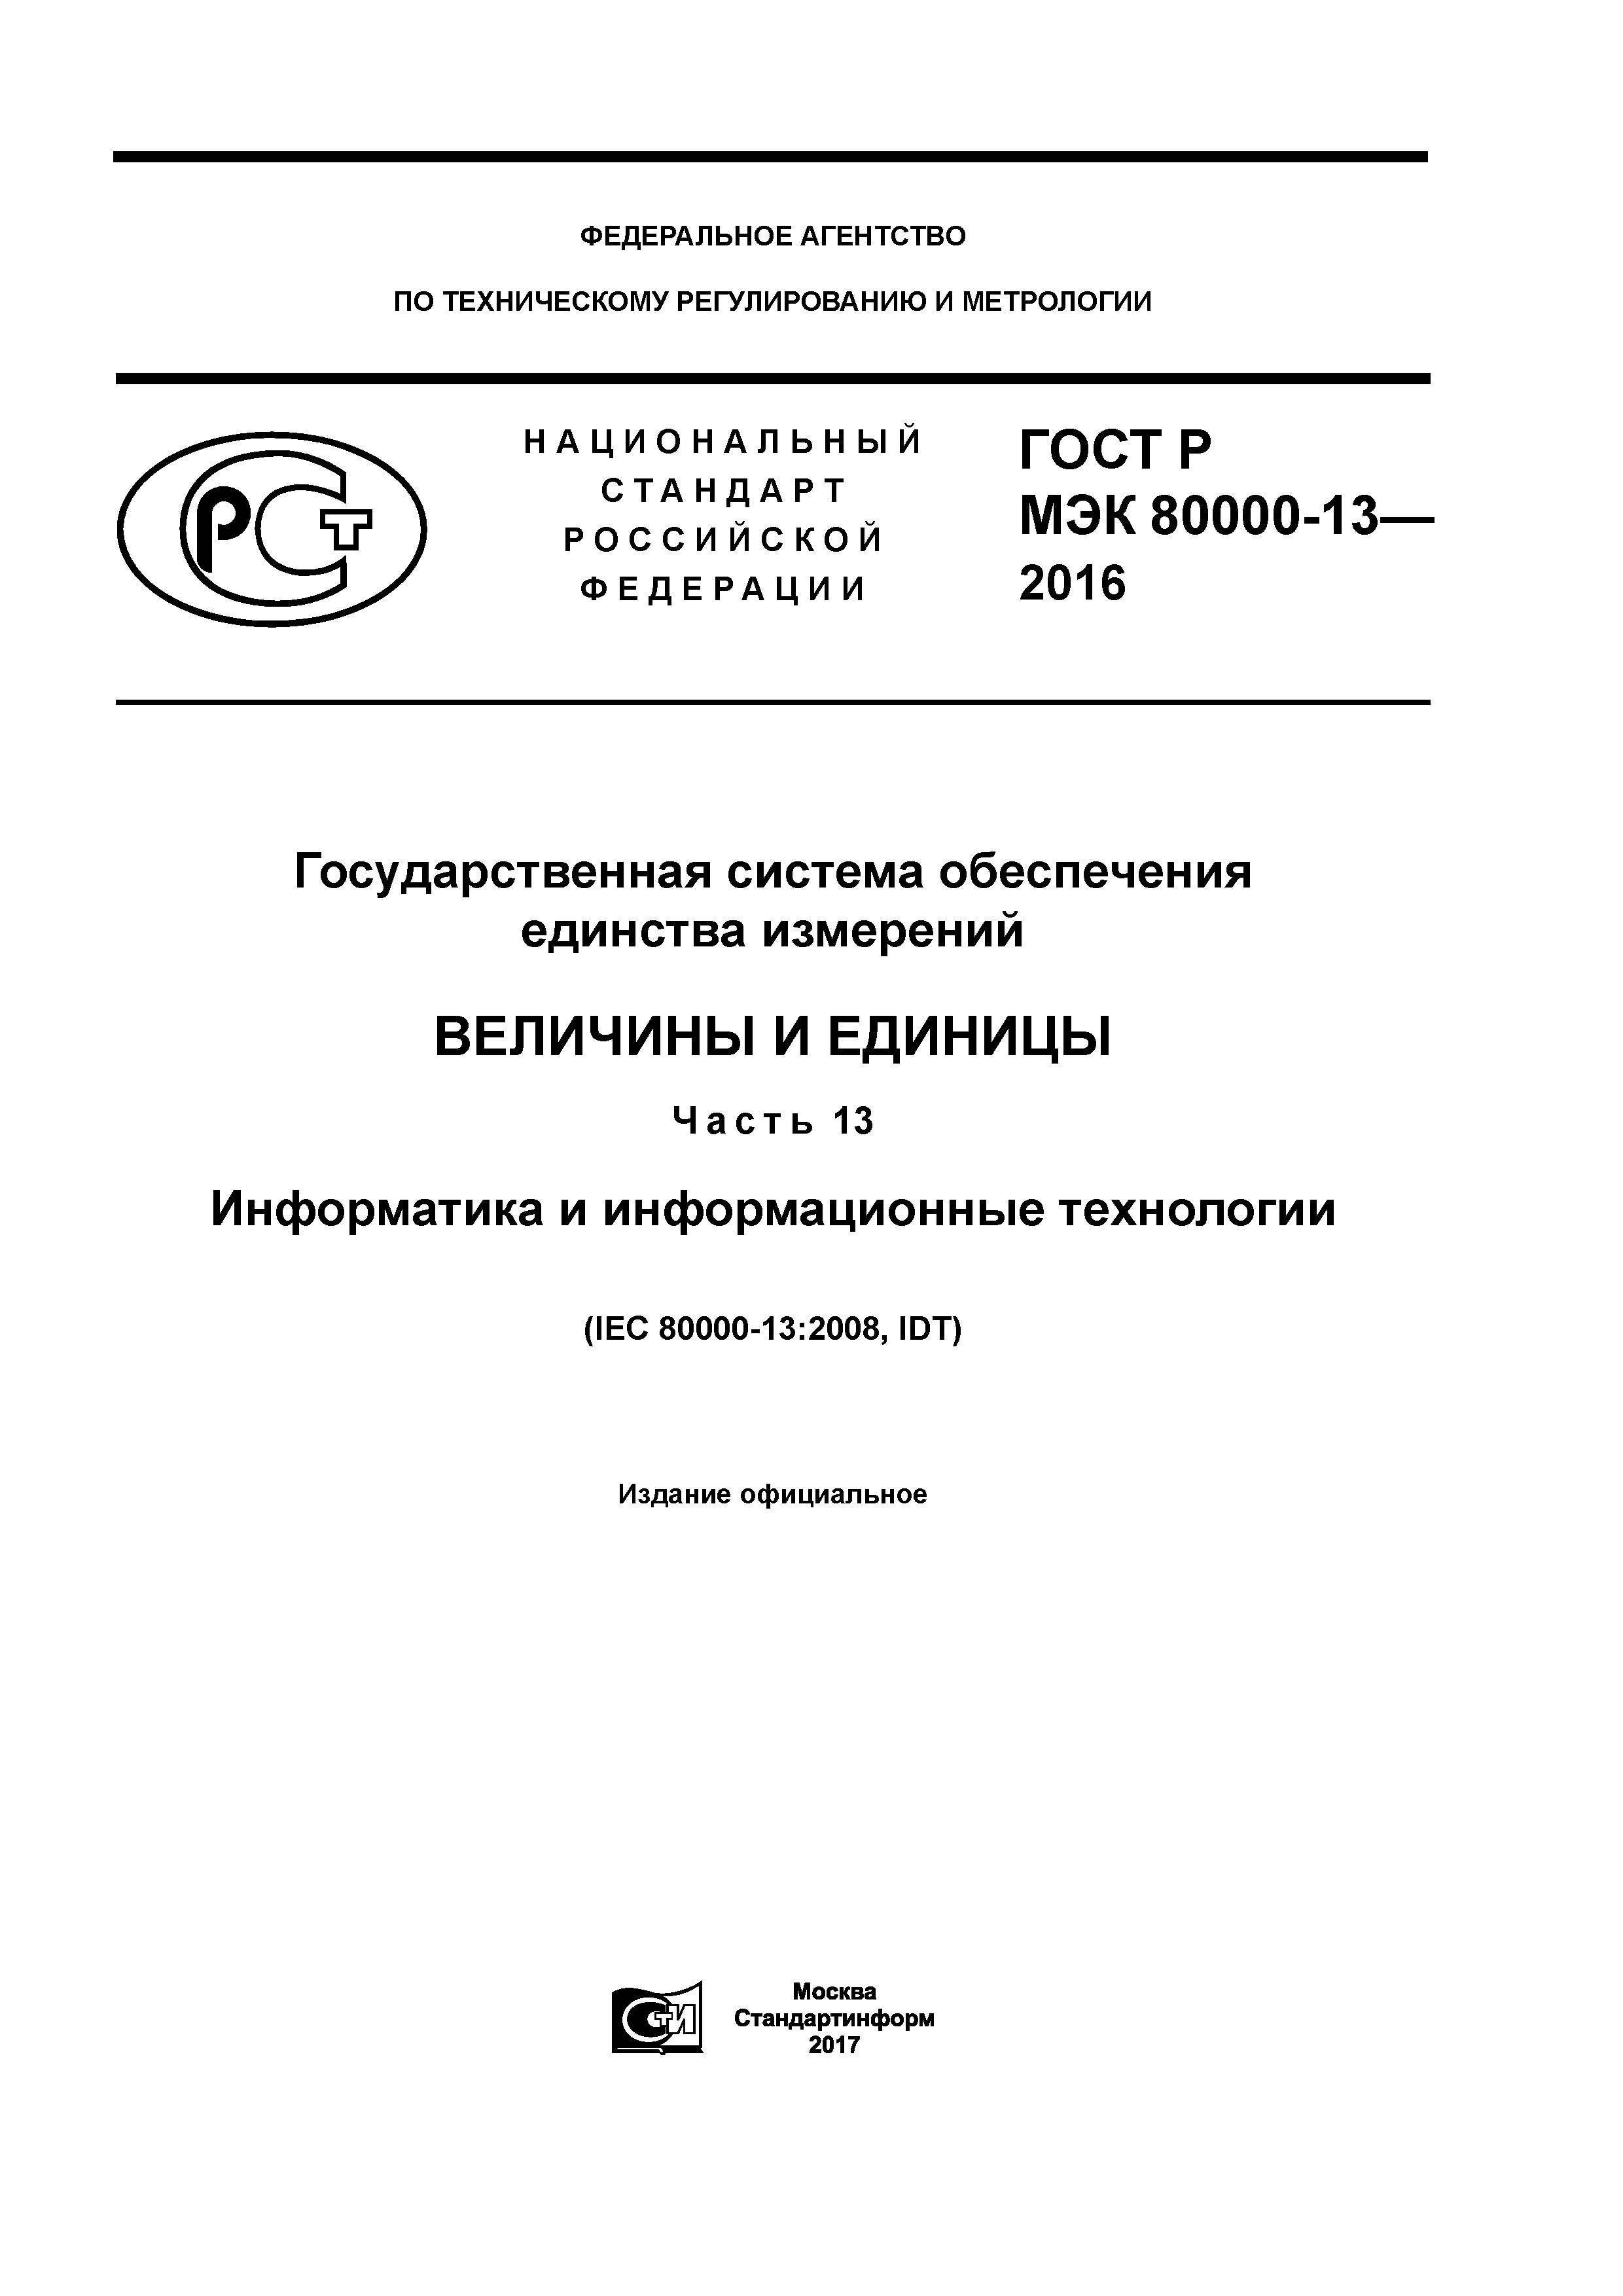 ГОСТ Р МЭК 80000-13-2016